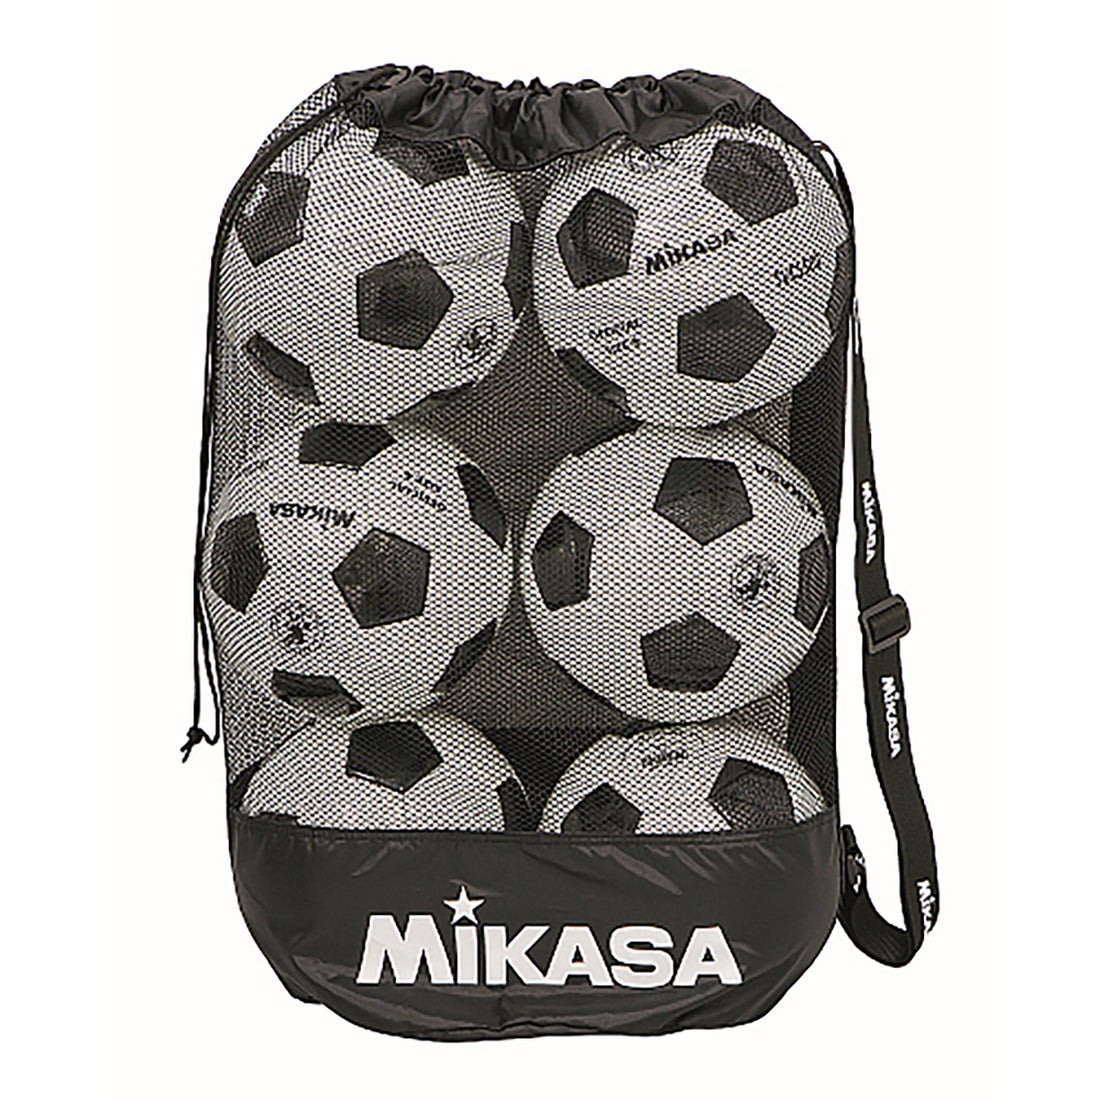 市場 クーポン利用でさらにOFF MIKASA ミカサ サッカーボールバッグ6個入